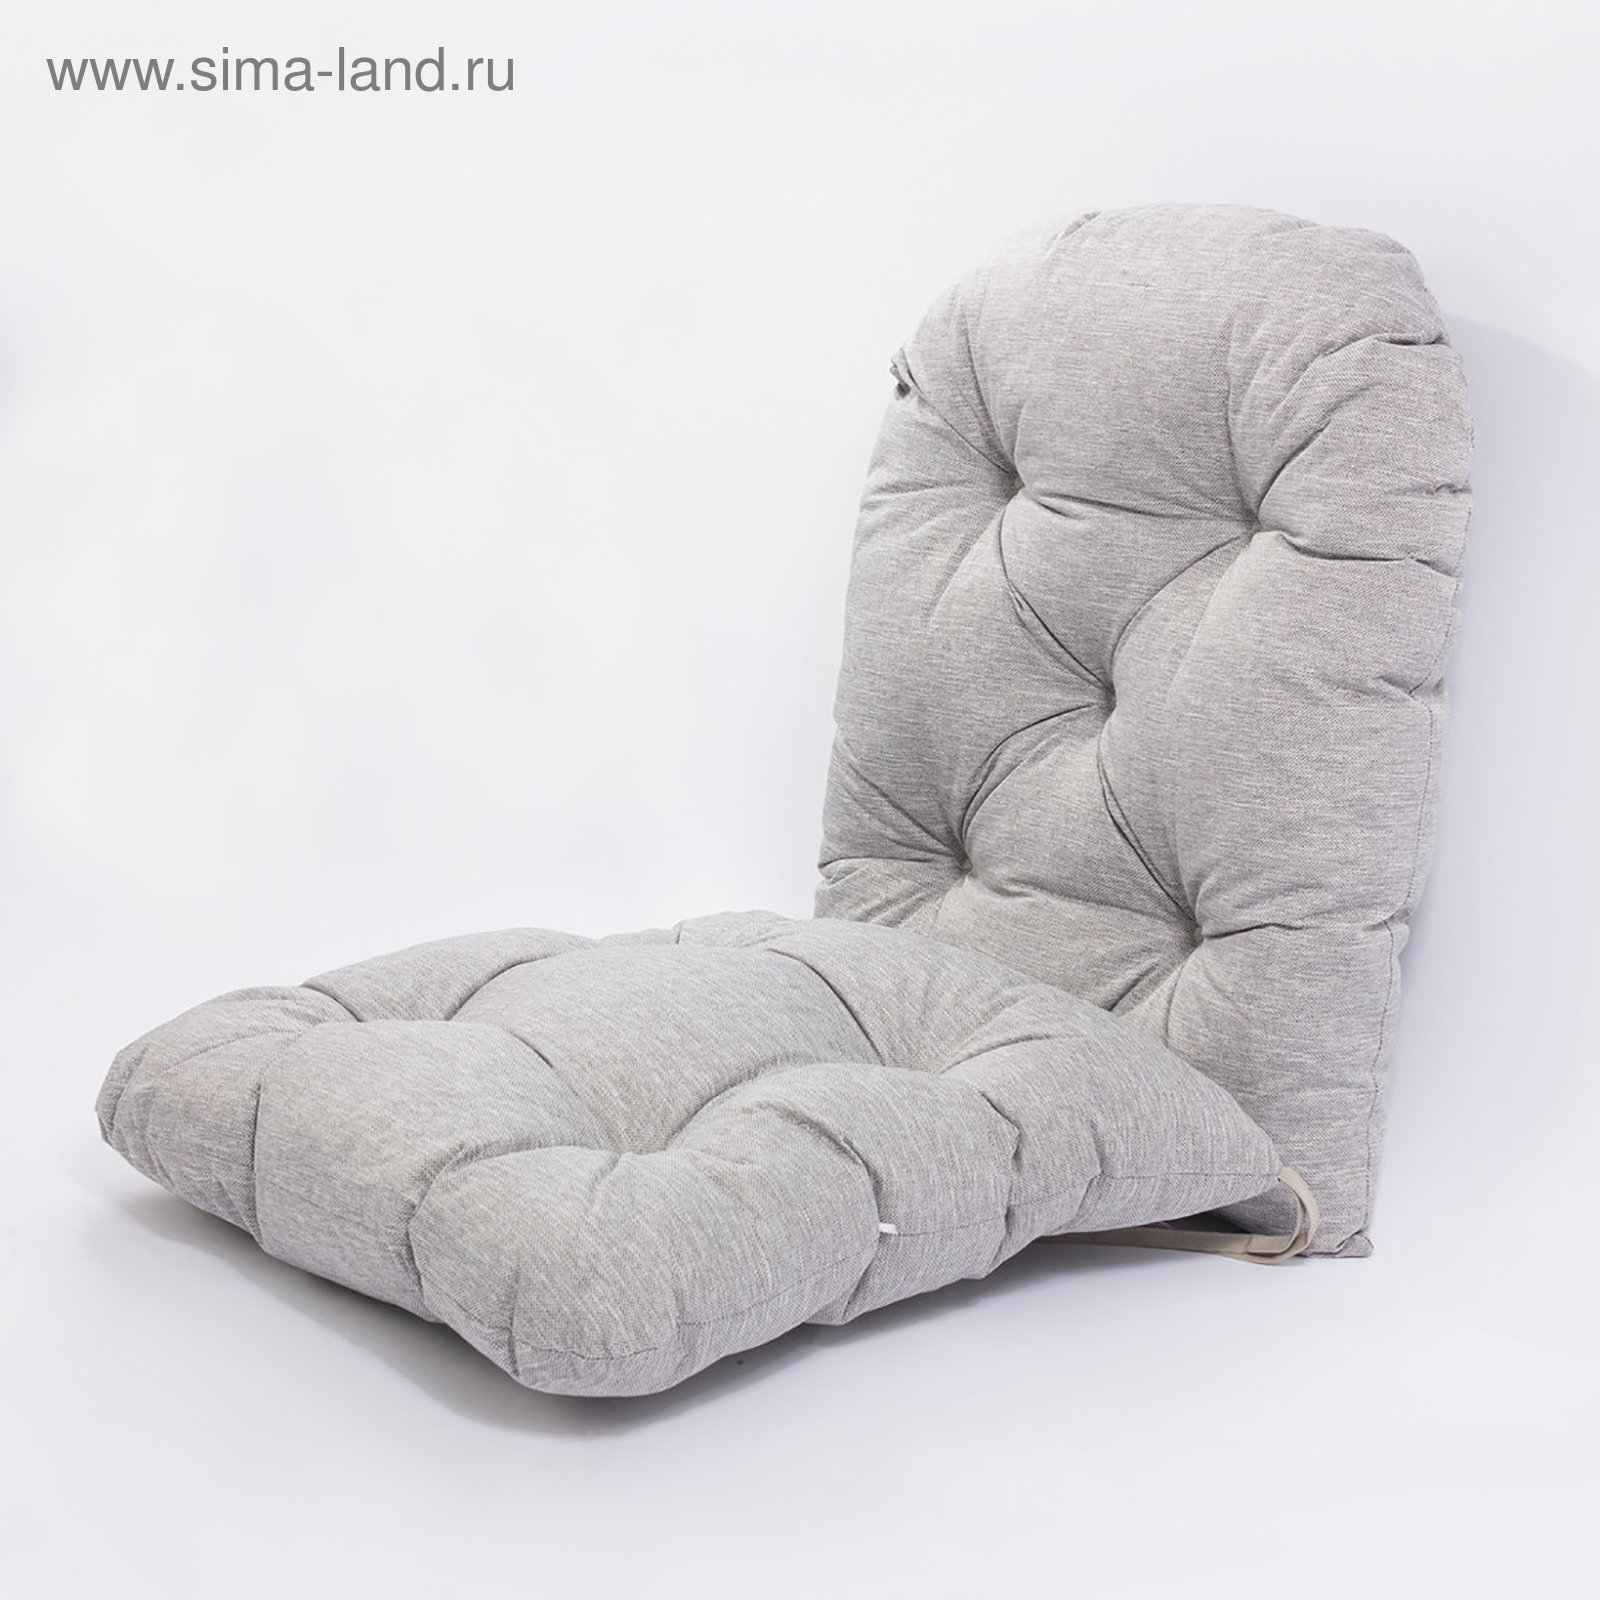 Подушка для кресла-качалки Качели Мания универсальная